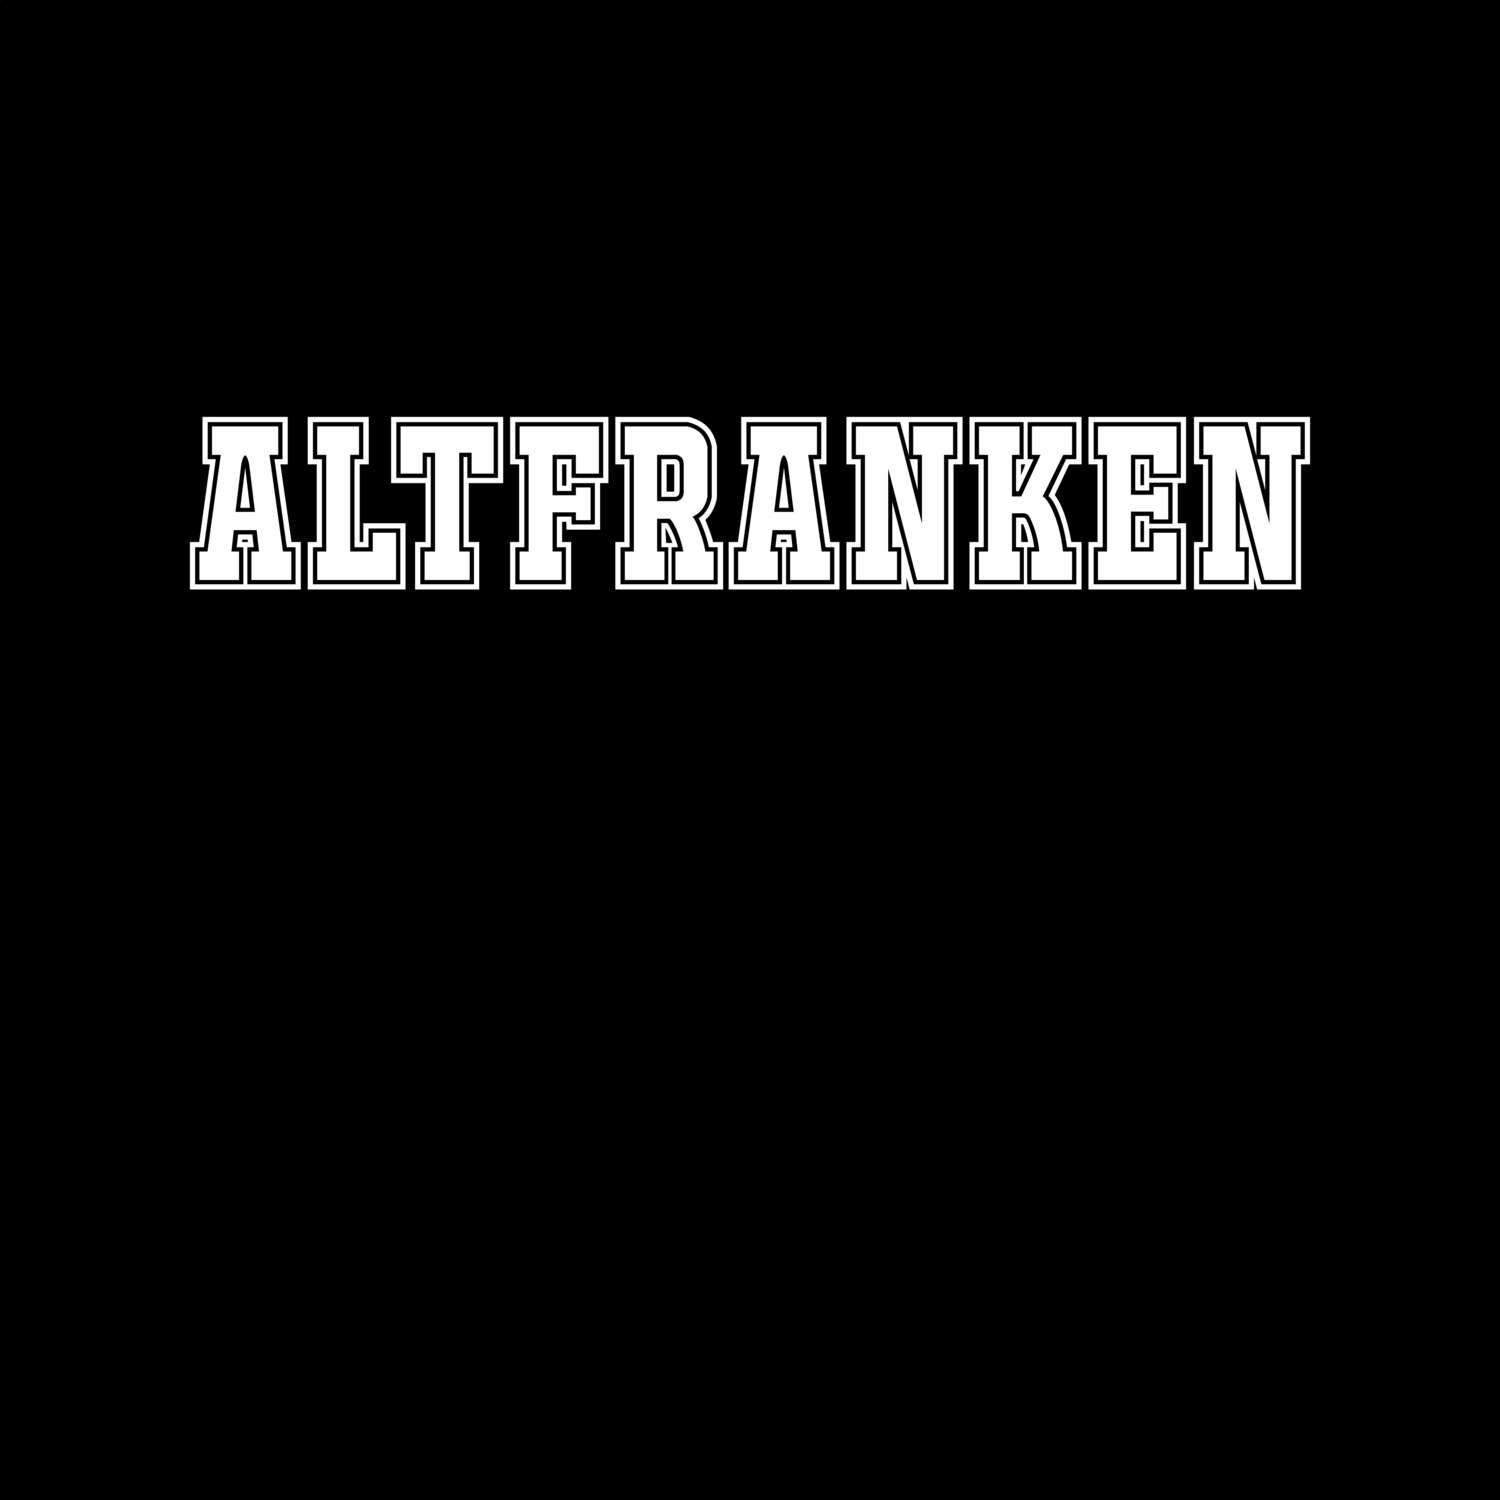 Altfranken T-Shirt »Classic«